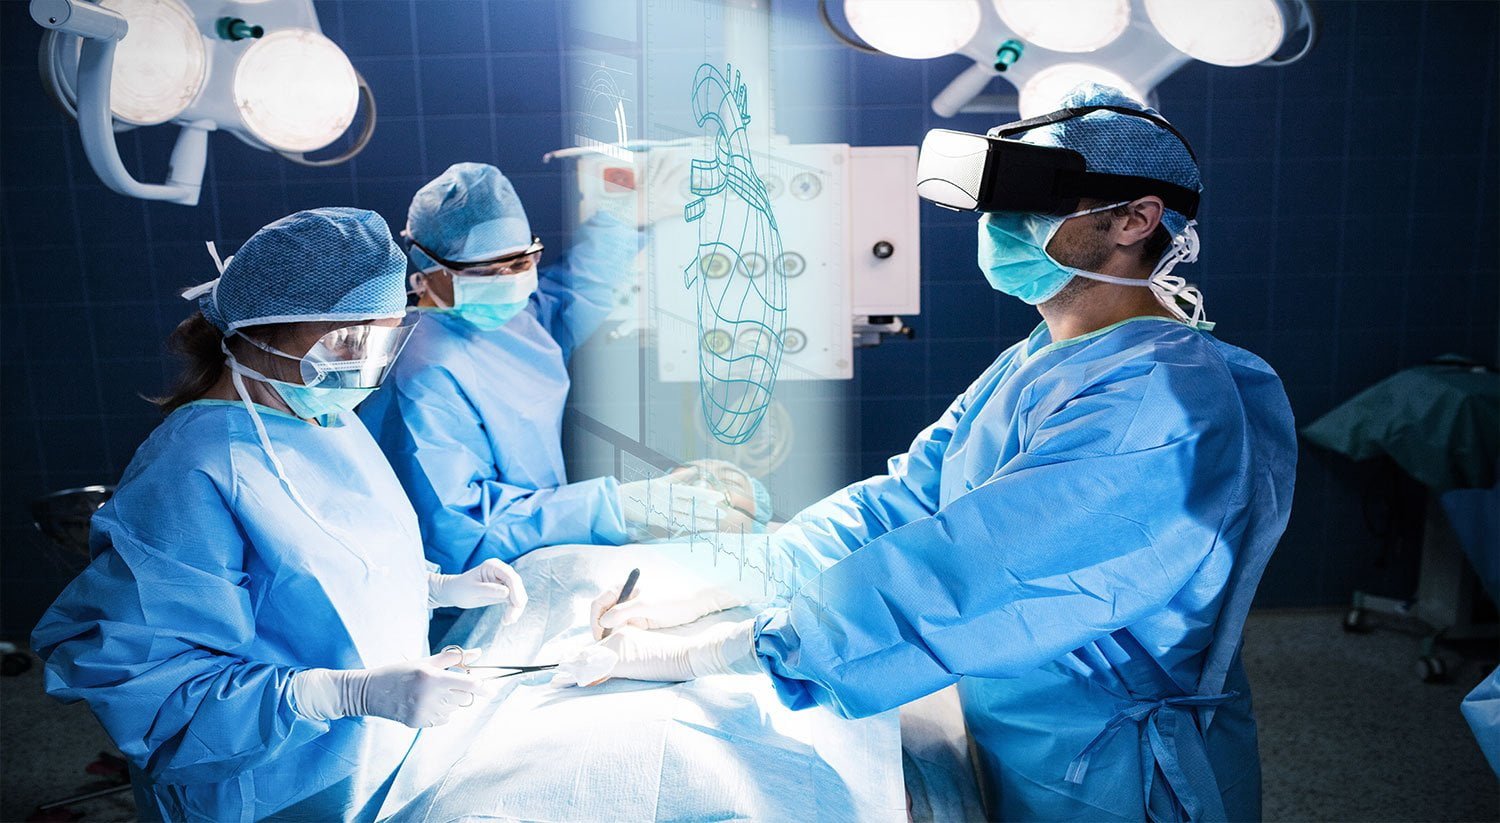 réalité virtuelle et médecine